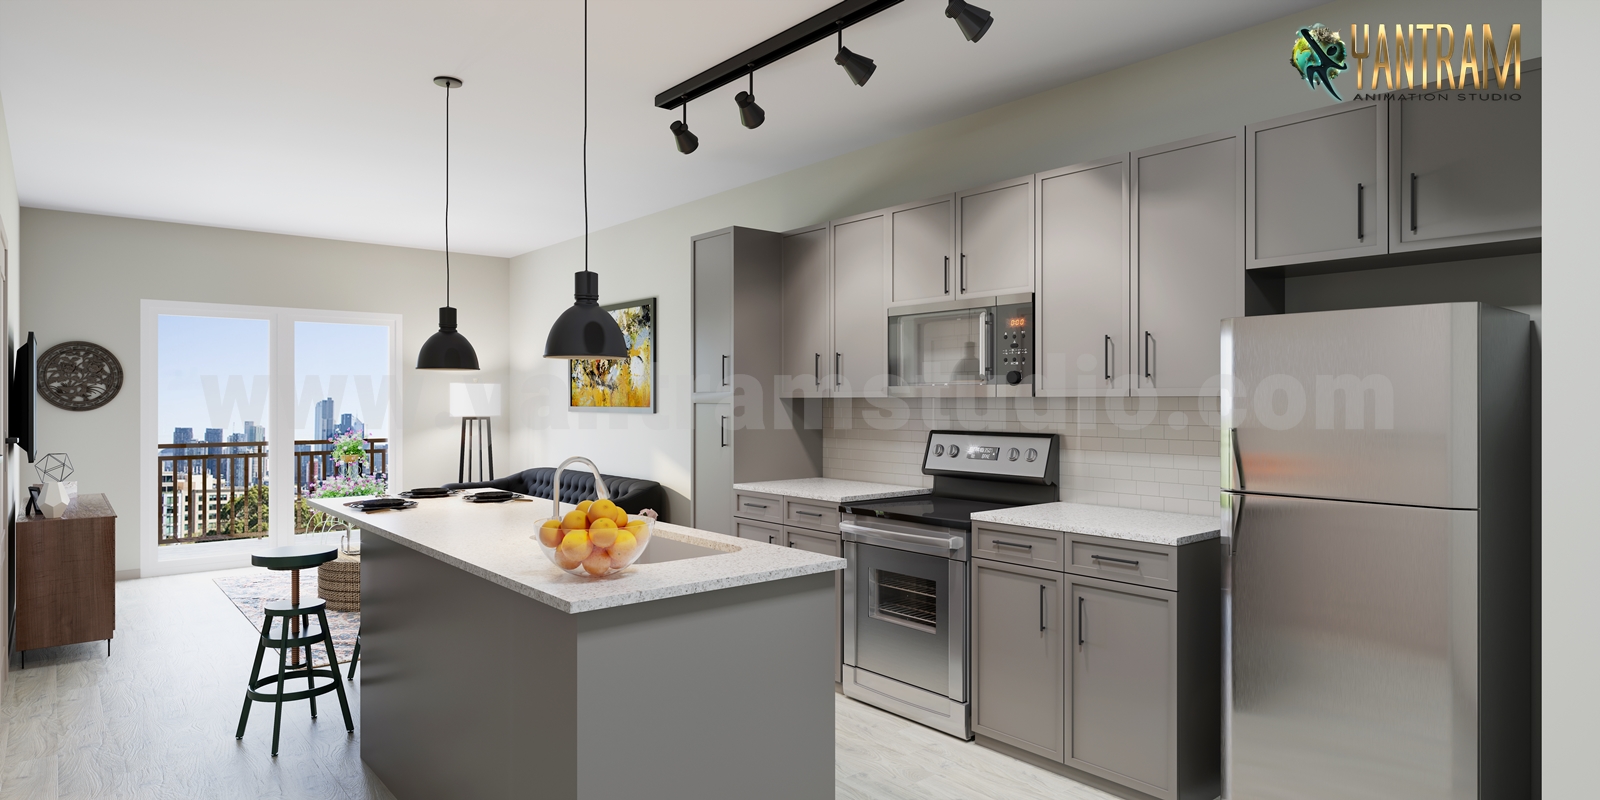 Stunning_living_kitchen_3d_render_ideas_photo-realistic.jpg -  by Yantramarchitecturaldesignstudio